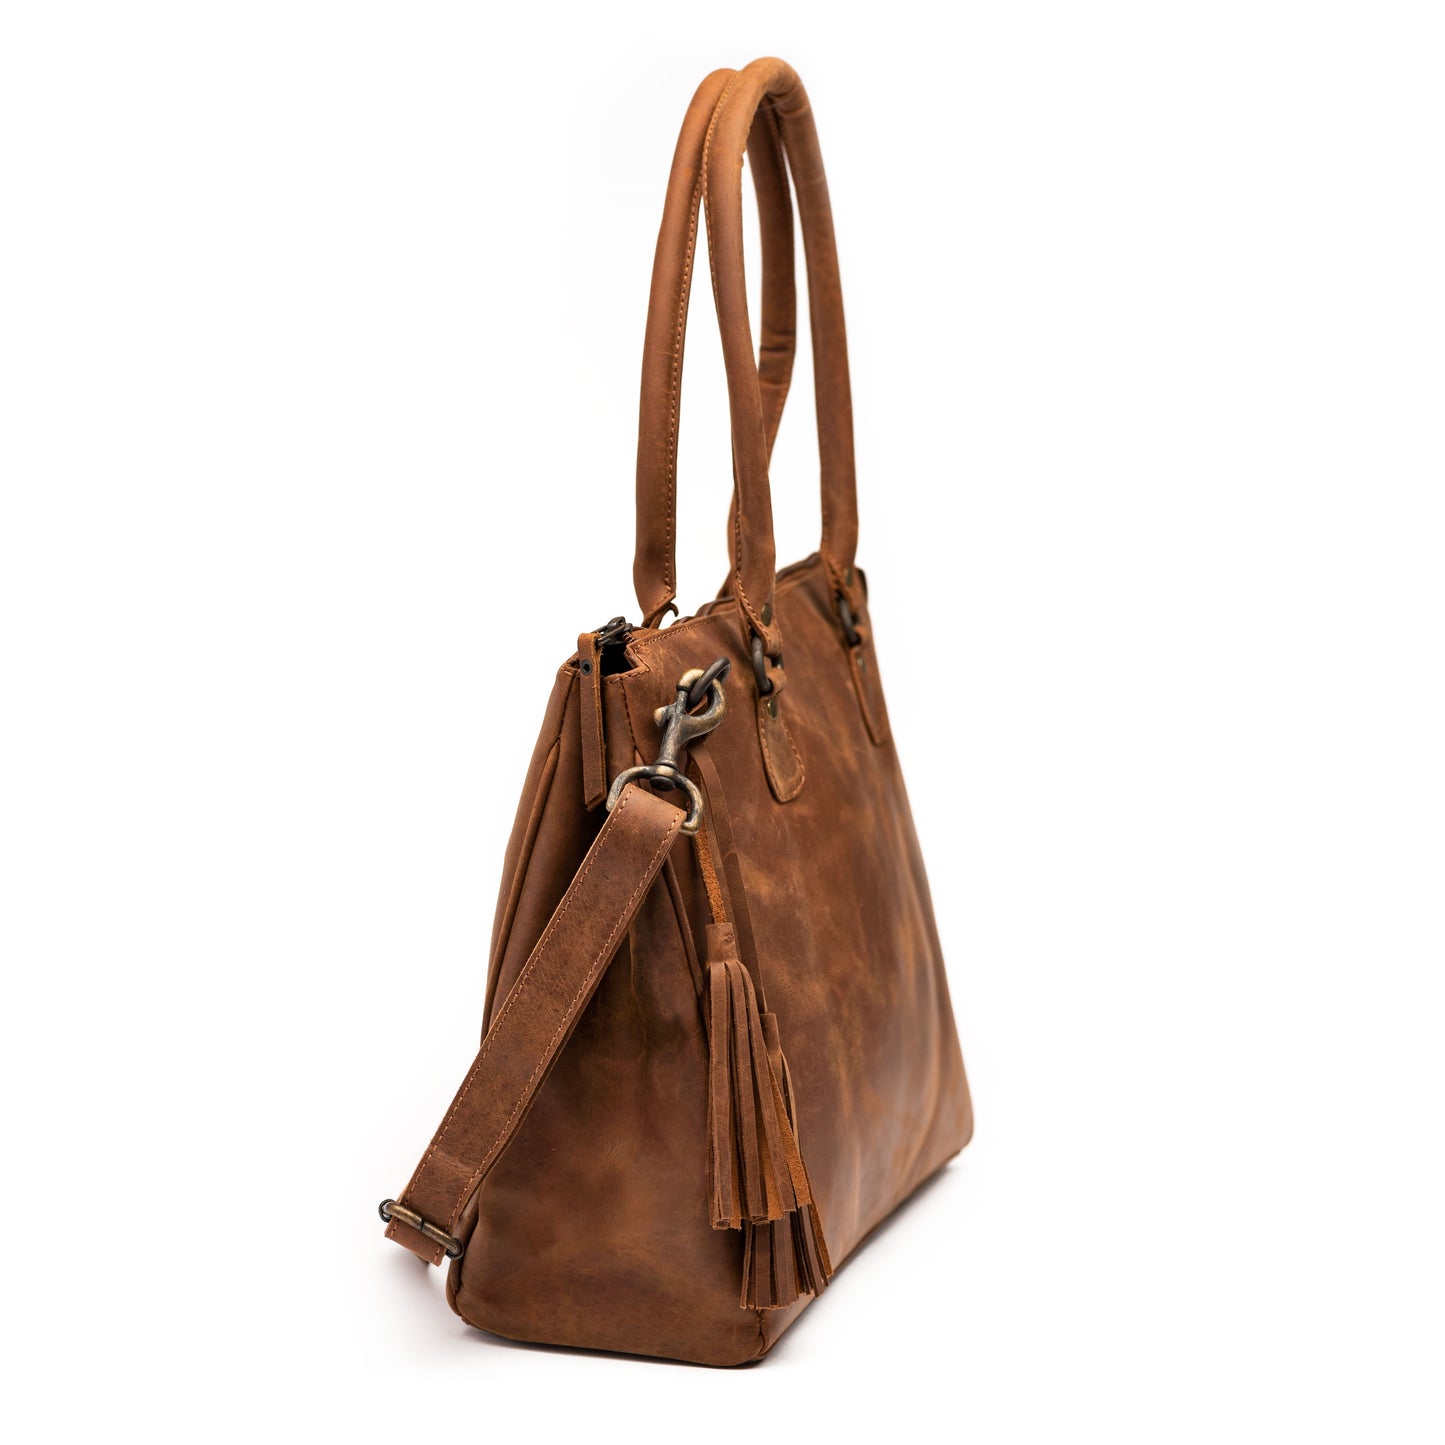 Leather Handbag 2.0 - Saddle Brown